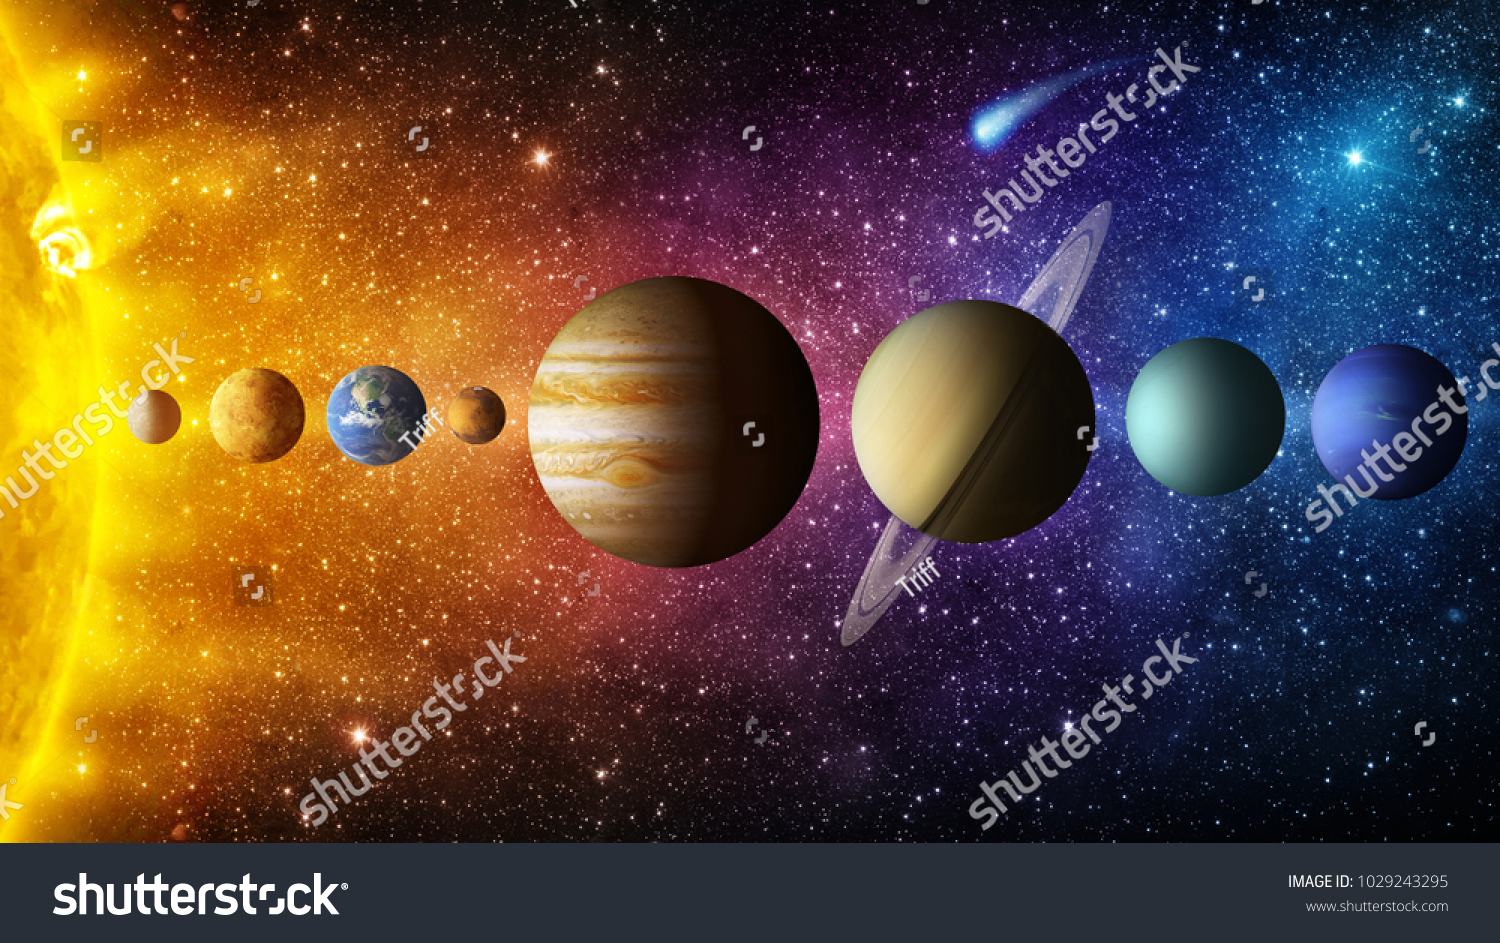 太阳系行星 彗星 太阳和恒星 这个图像由美国航空航天局提供的元素 太阳 水星 金星 地球 火星 木星 土星 天王星 海王星 科学和教育背景 库存照片 立即编辑